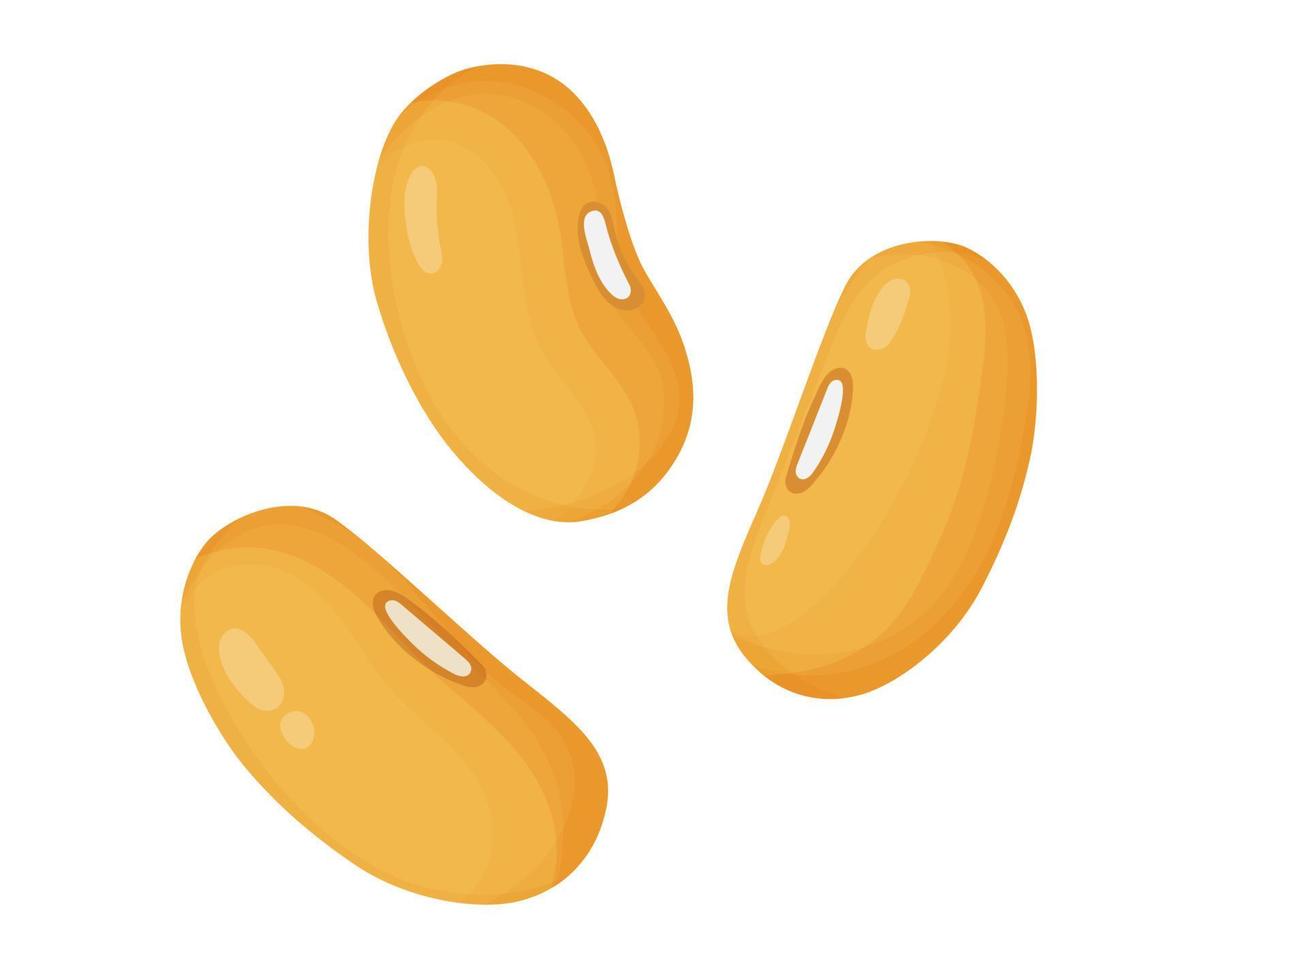 kidneybönor. gula bönor i tecknad stil. hälsosam vegetarisk mat illustration. vektor